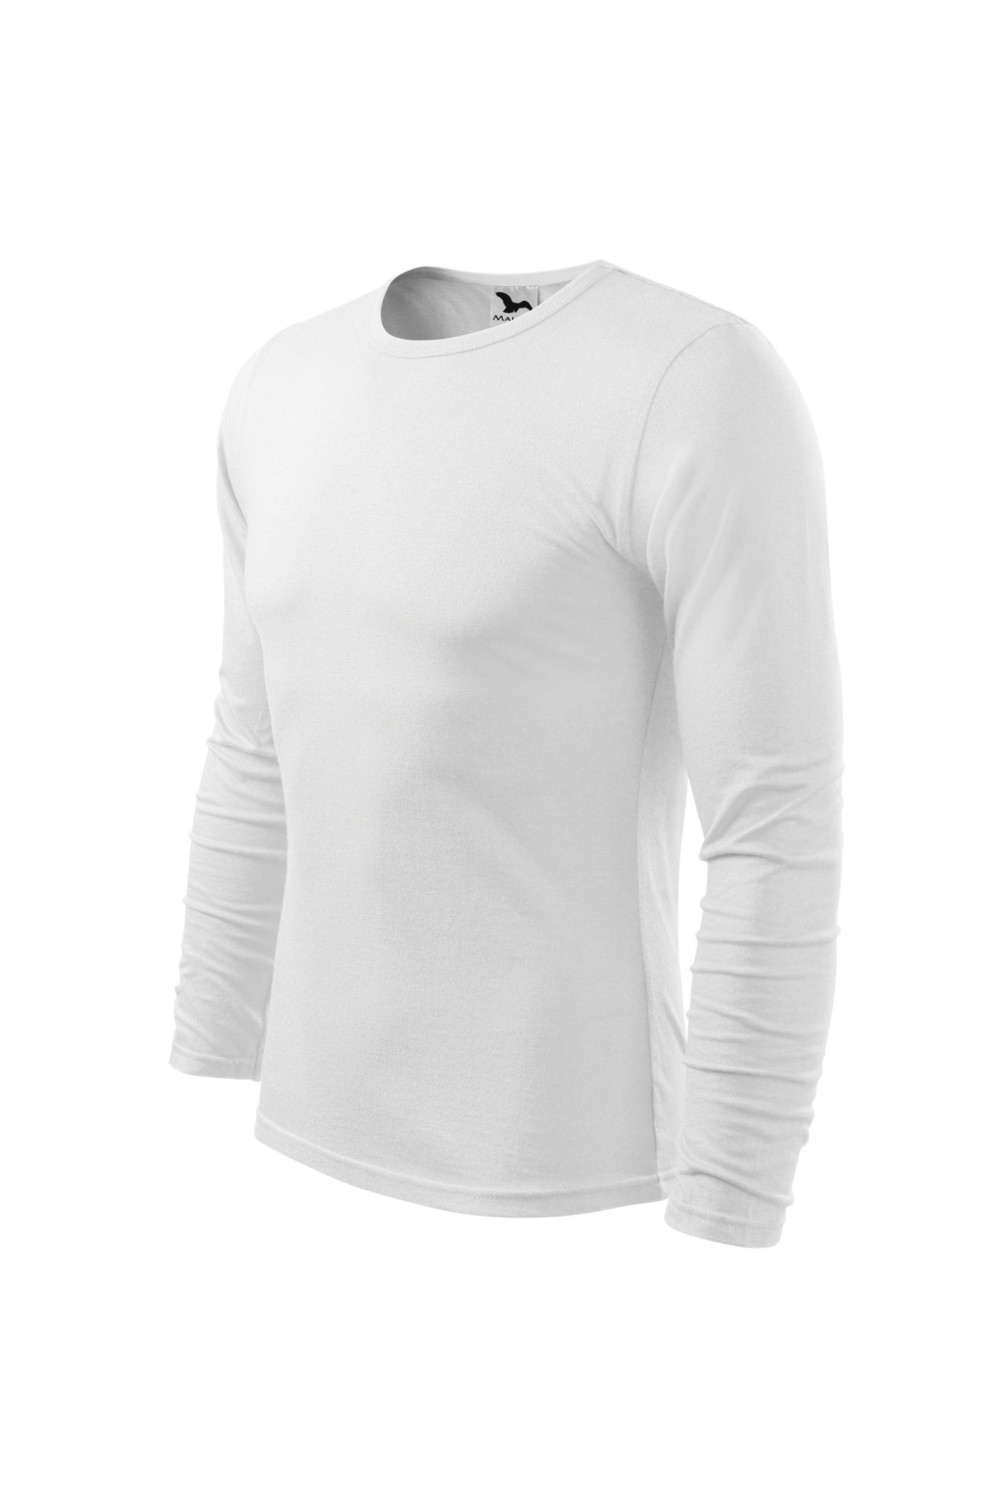 FIT-T LS 119 MALFINI ADLER Koszulka męska fitness z długim rękawem 100% bawełna biały